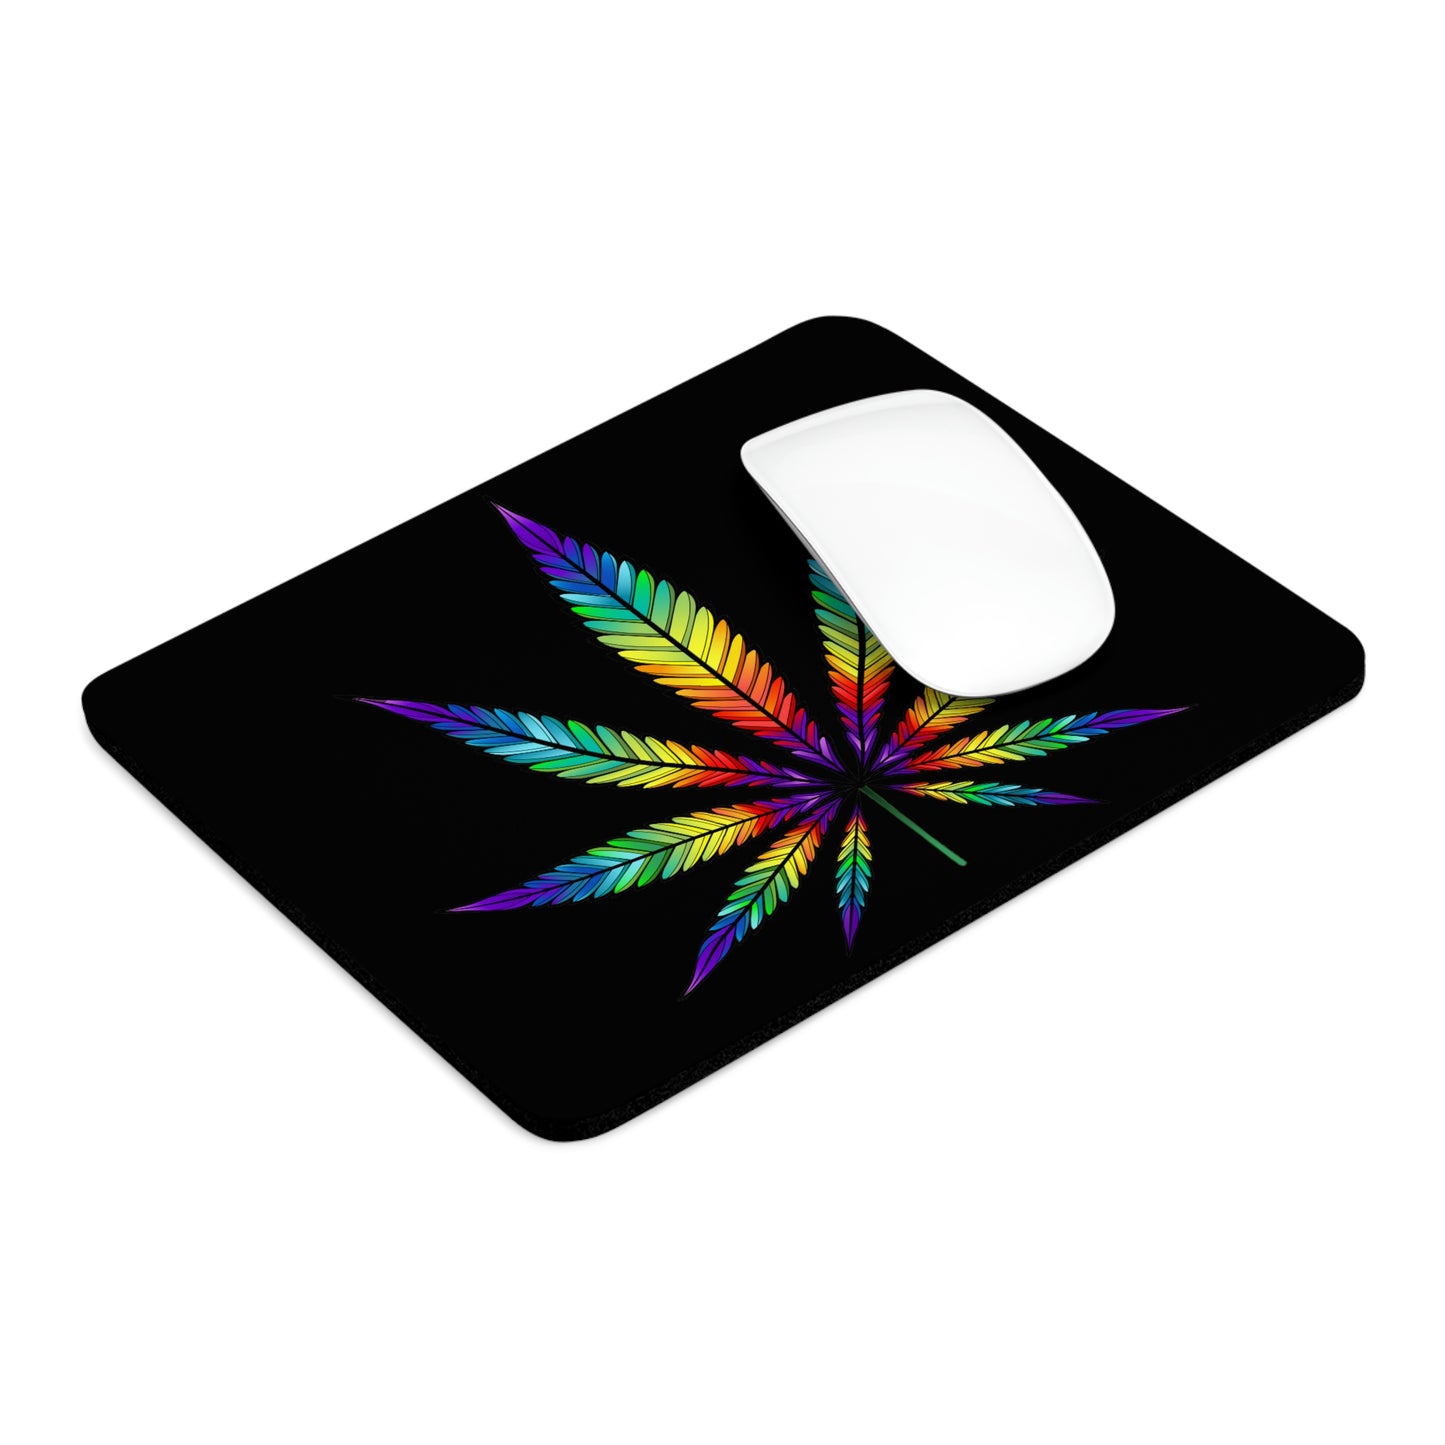 Rainbow Marijuana Leaf Mouse Pad.